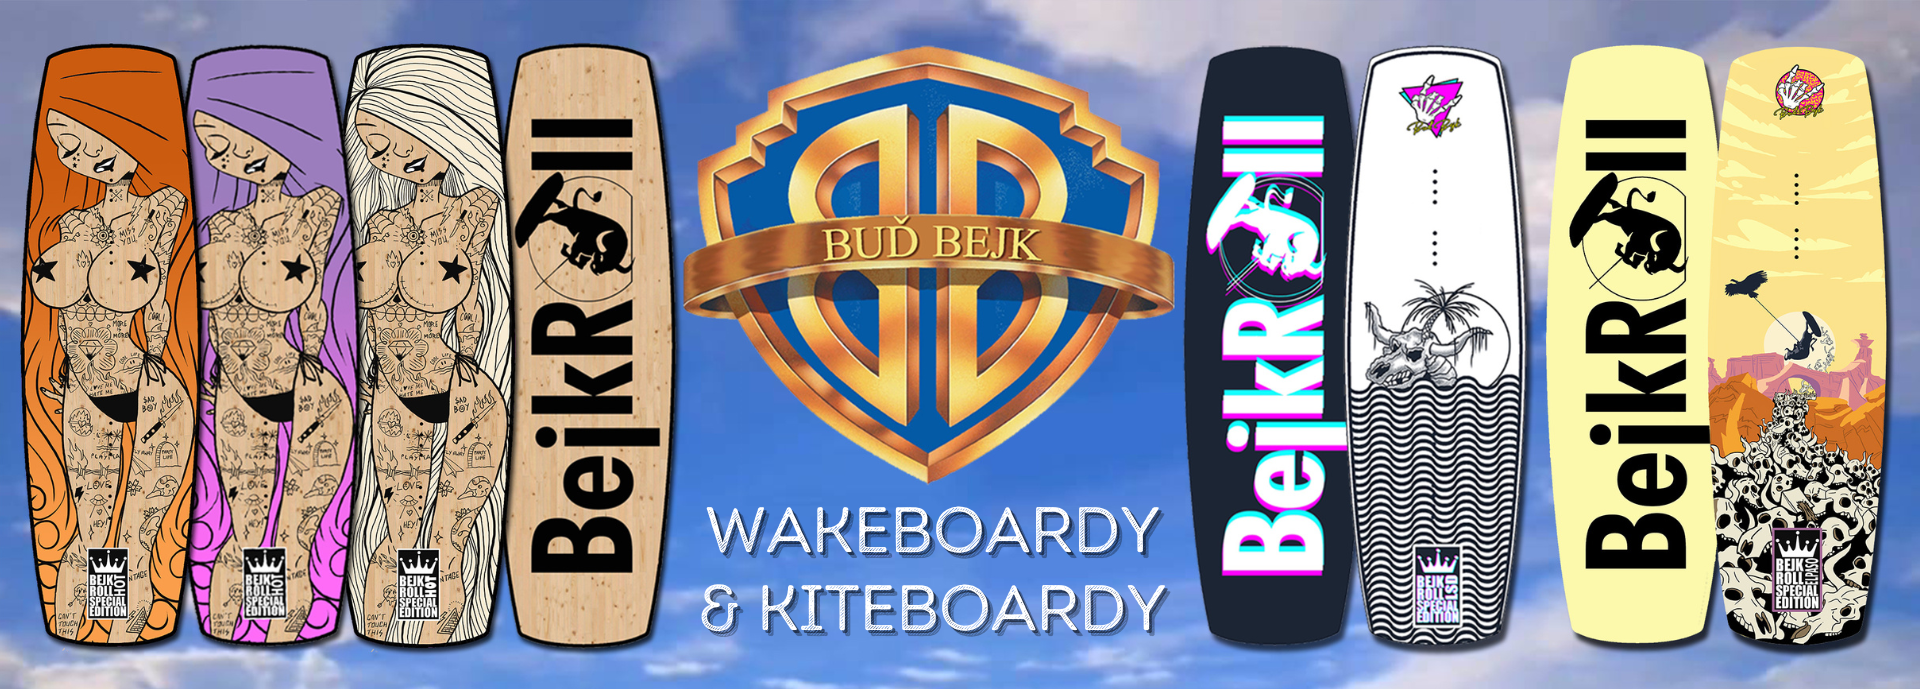 BejkRoll Wakeboardy a Kiteboardy